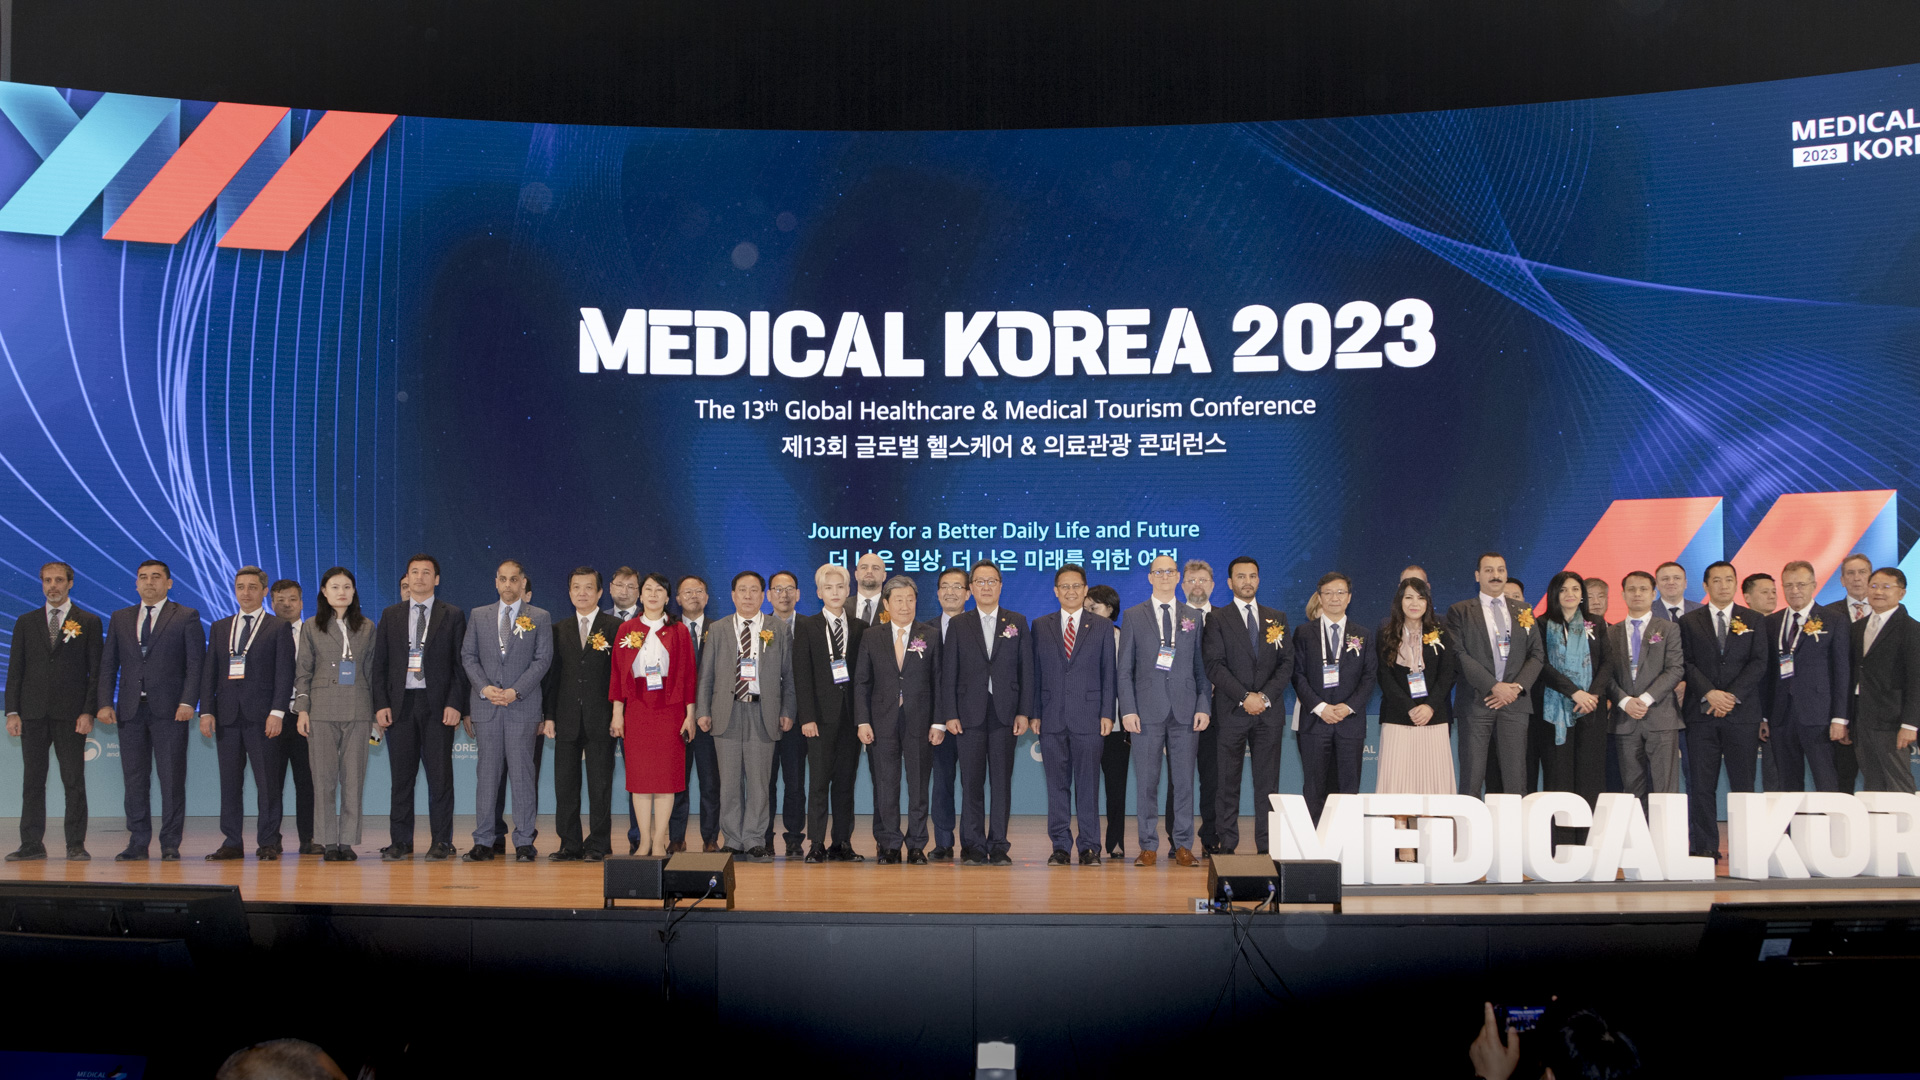 ‘더 나은 일상, 더 나은 미래를 위한 여정’ 「메디컬 코리아(Medical Korea) 2023」 사진31